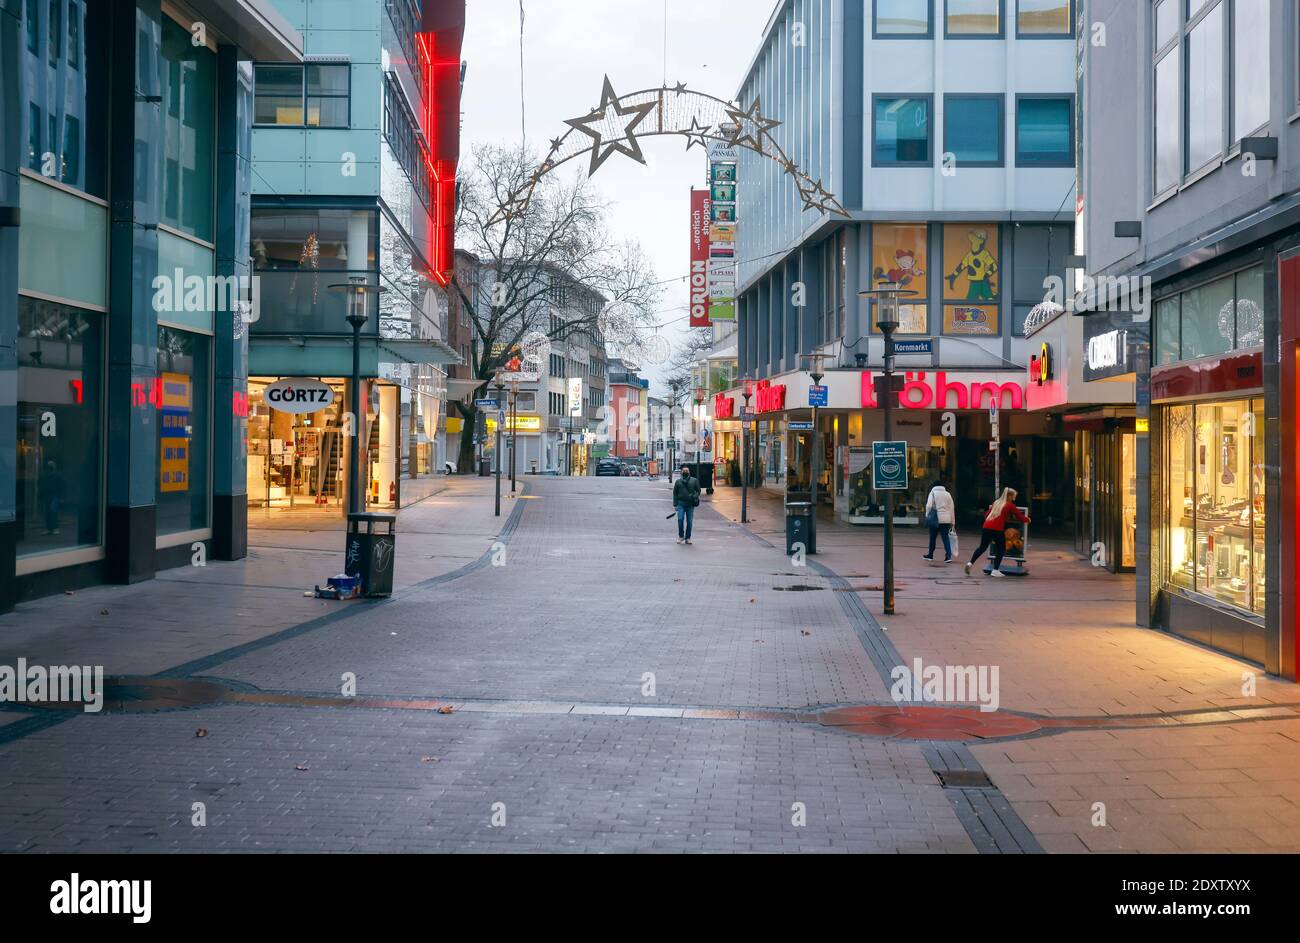 Essen, área de Ruhr, Renania del Norte-Westfalia, Alemania - Essen centro de la ciudad en tiempos de la crisis de Corona durante el segundo cierre el día antes de Navidad Foto de stock